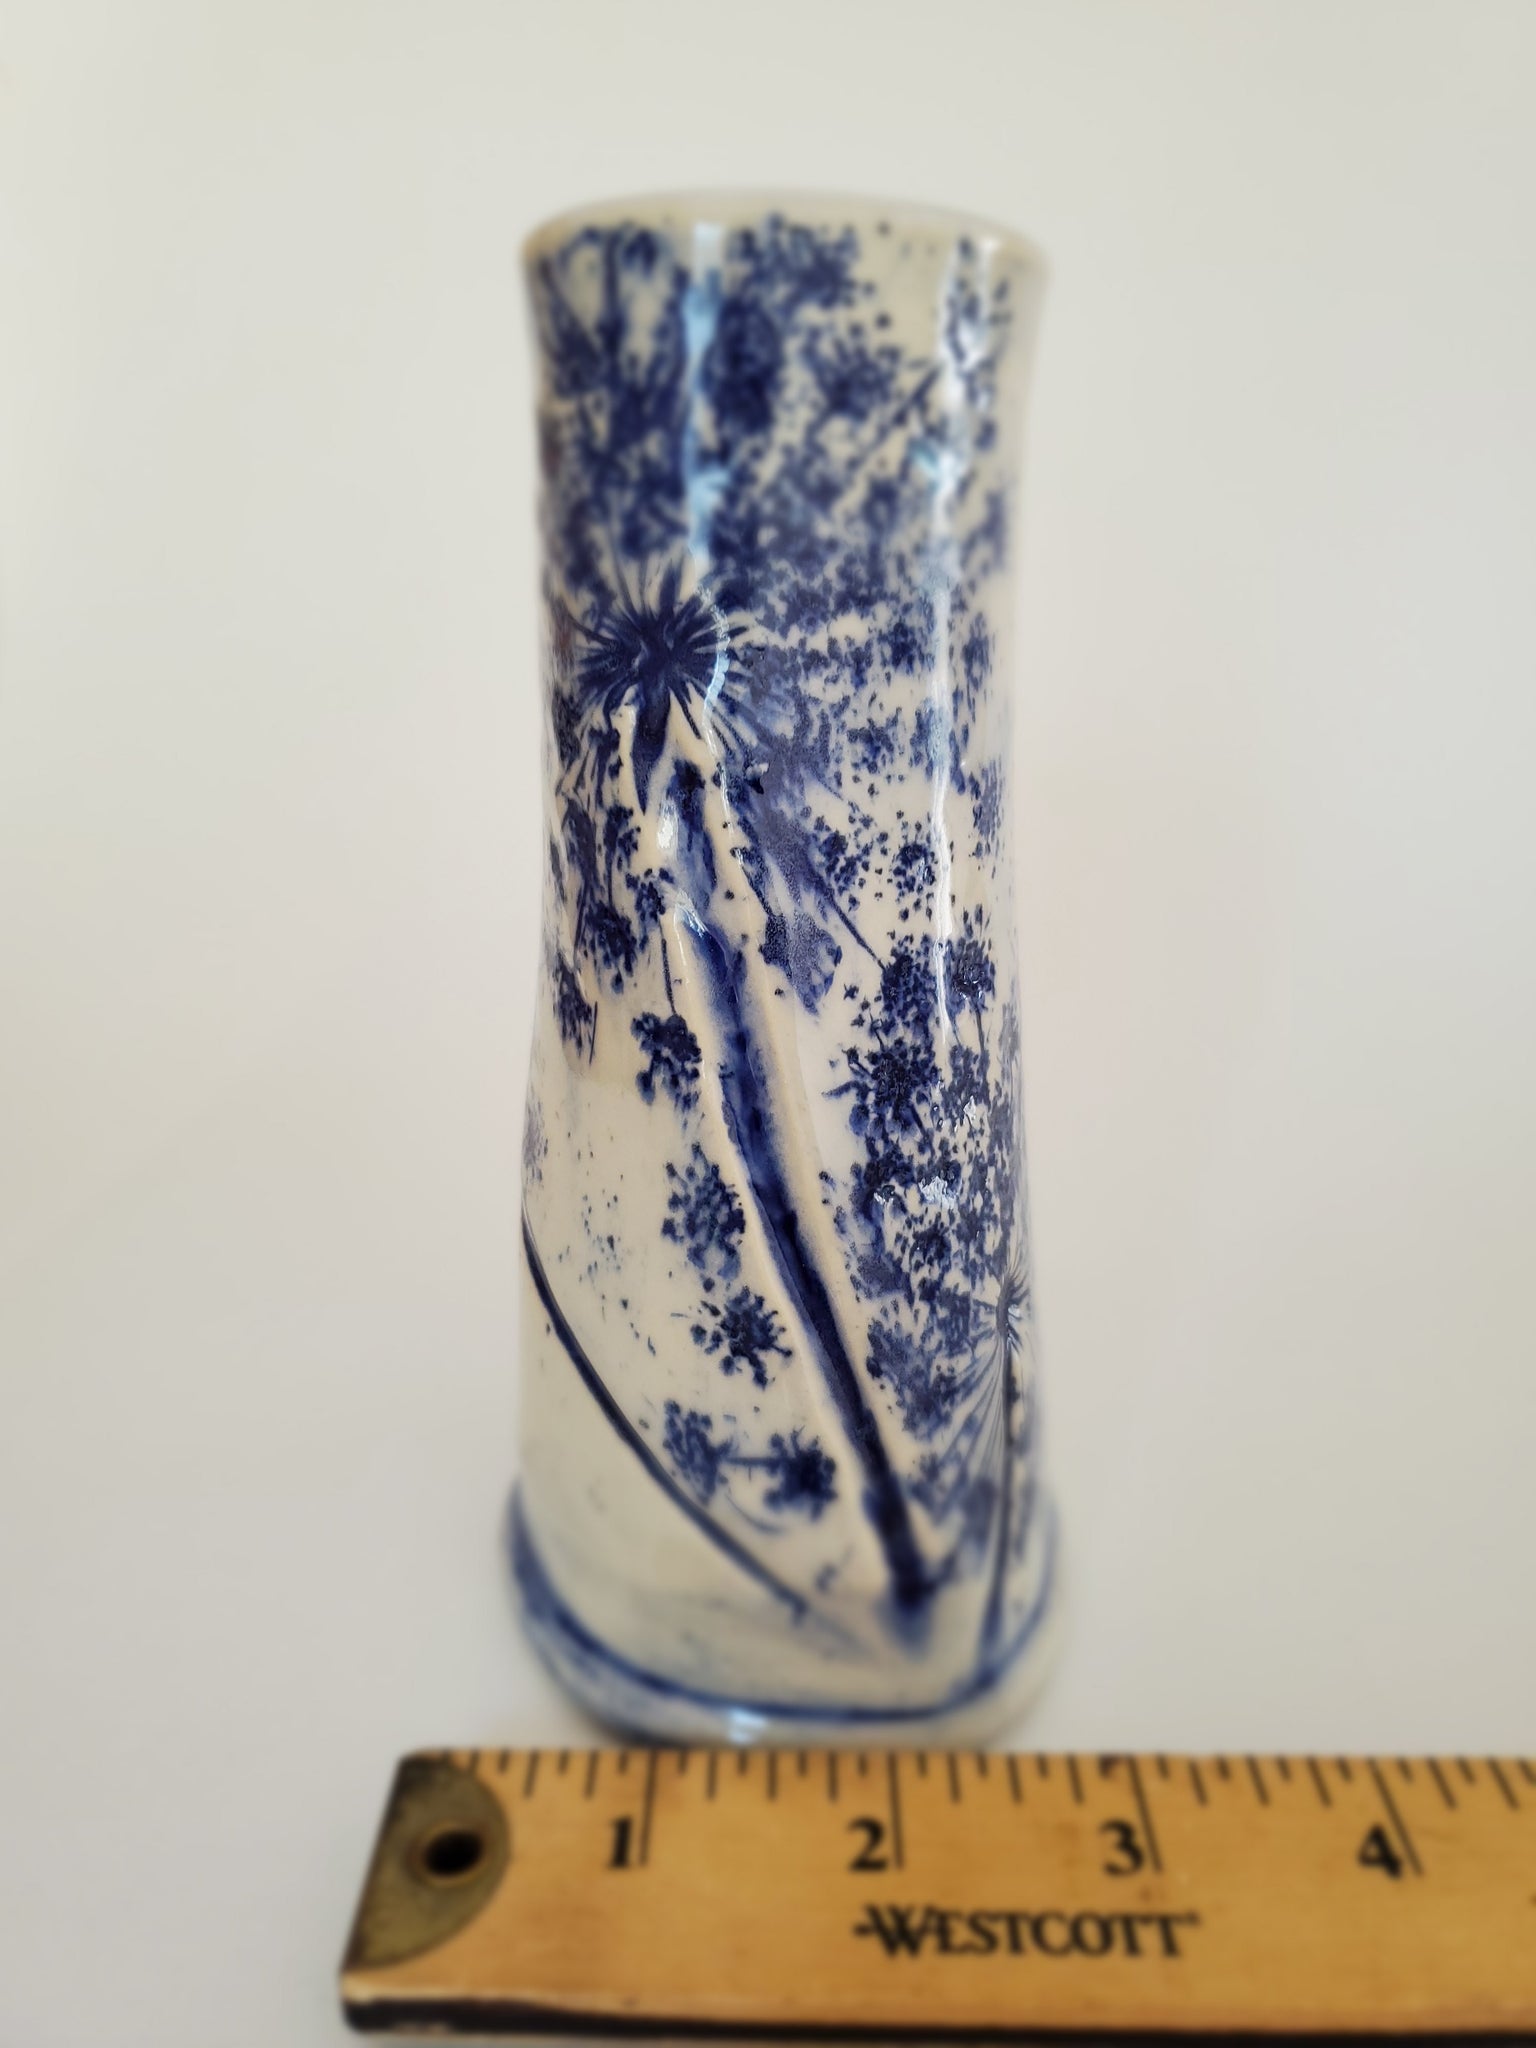 Queen Anne's Lace Vase Megan Twing